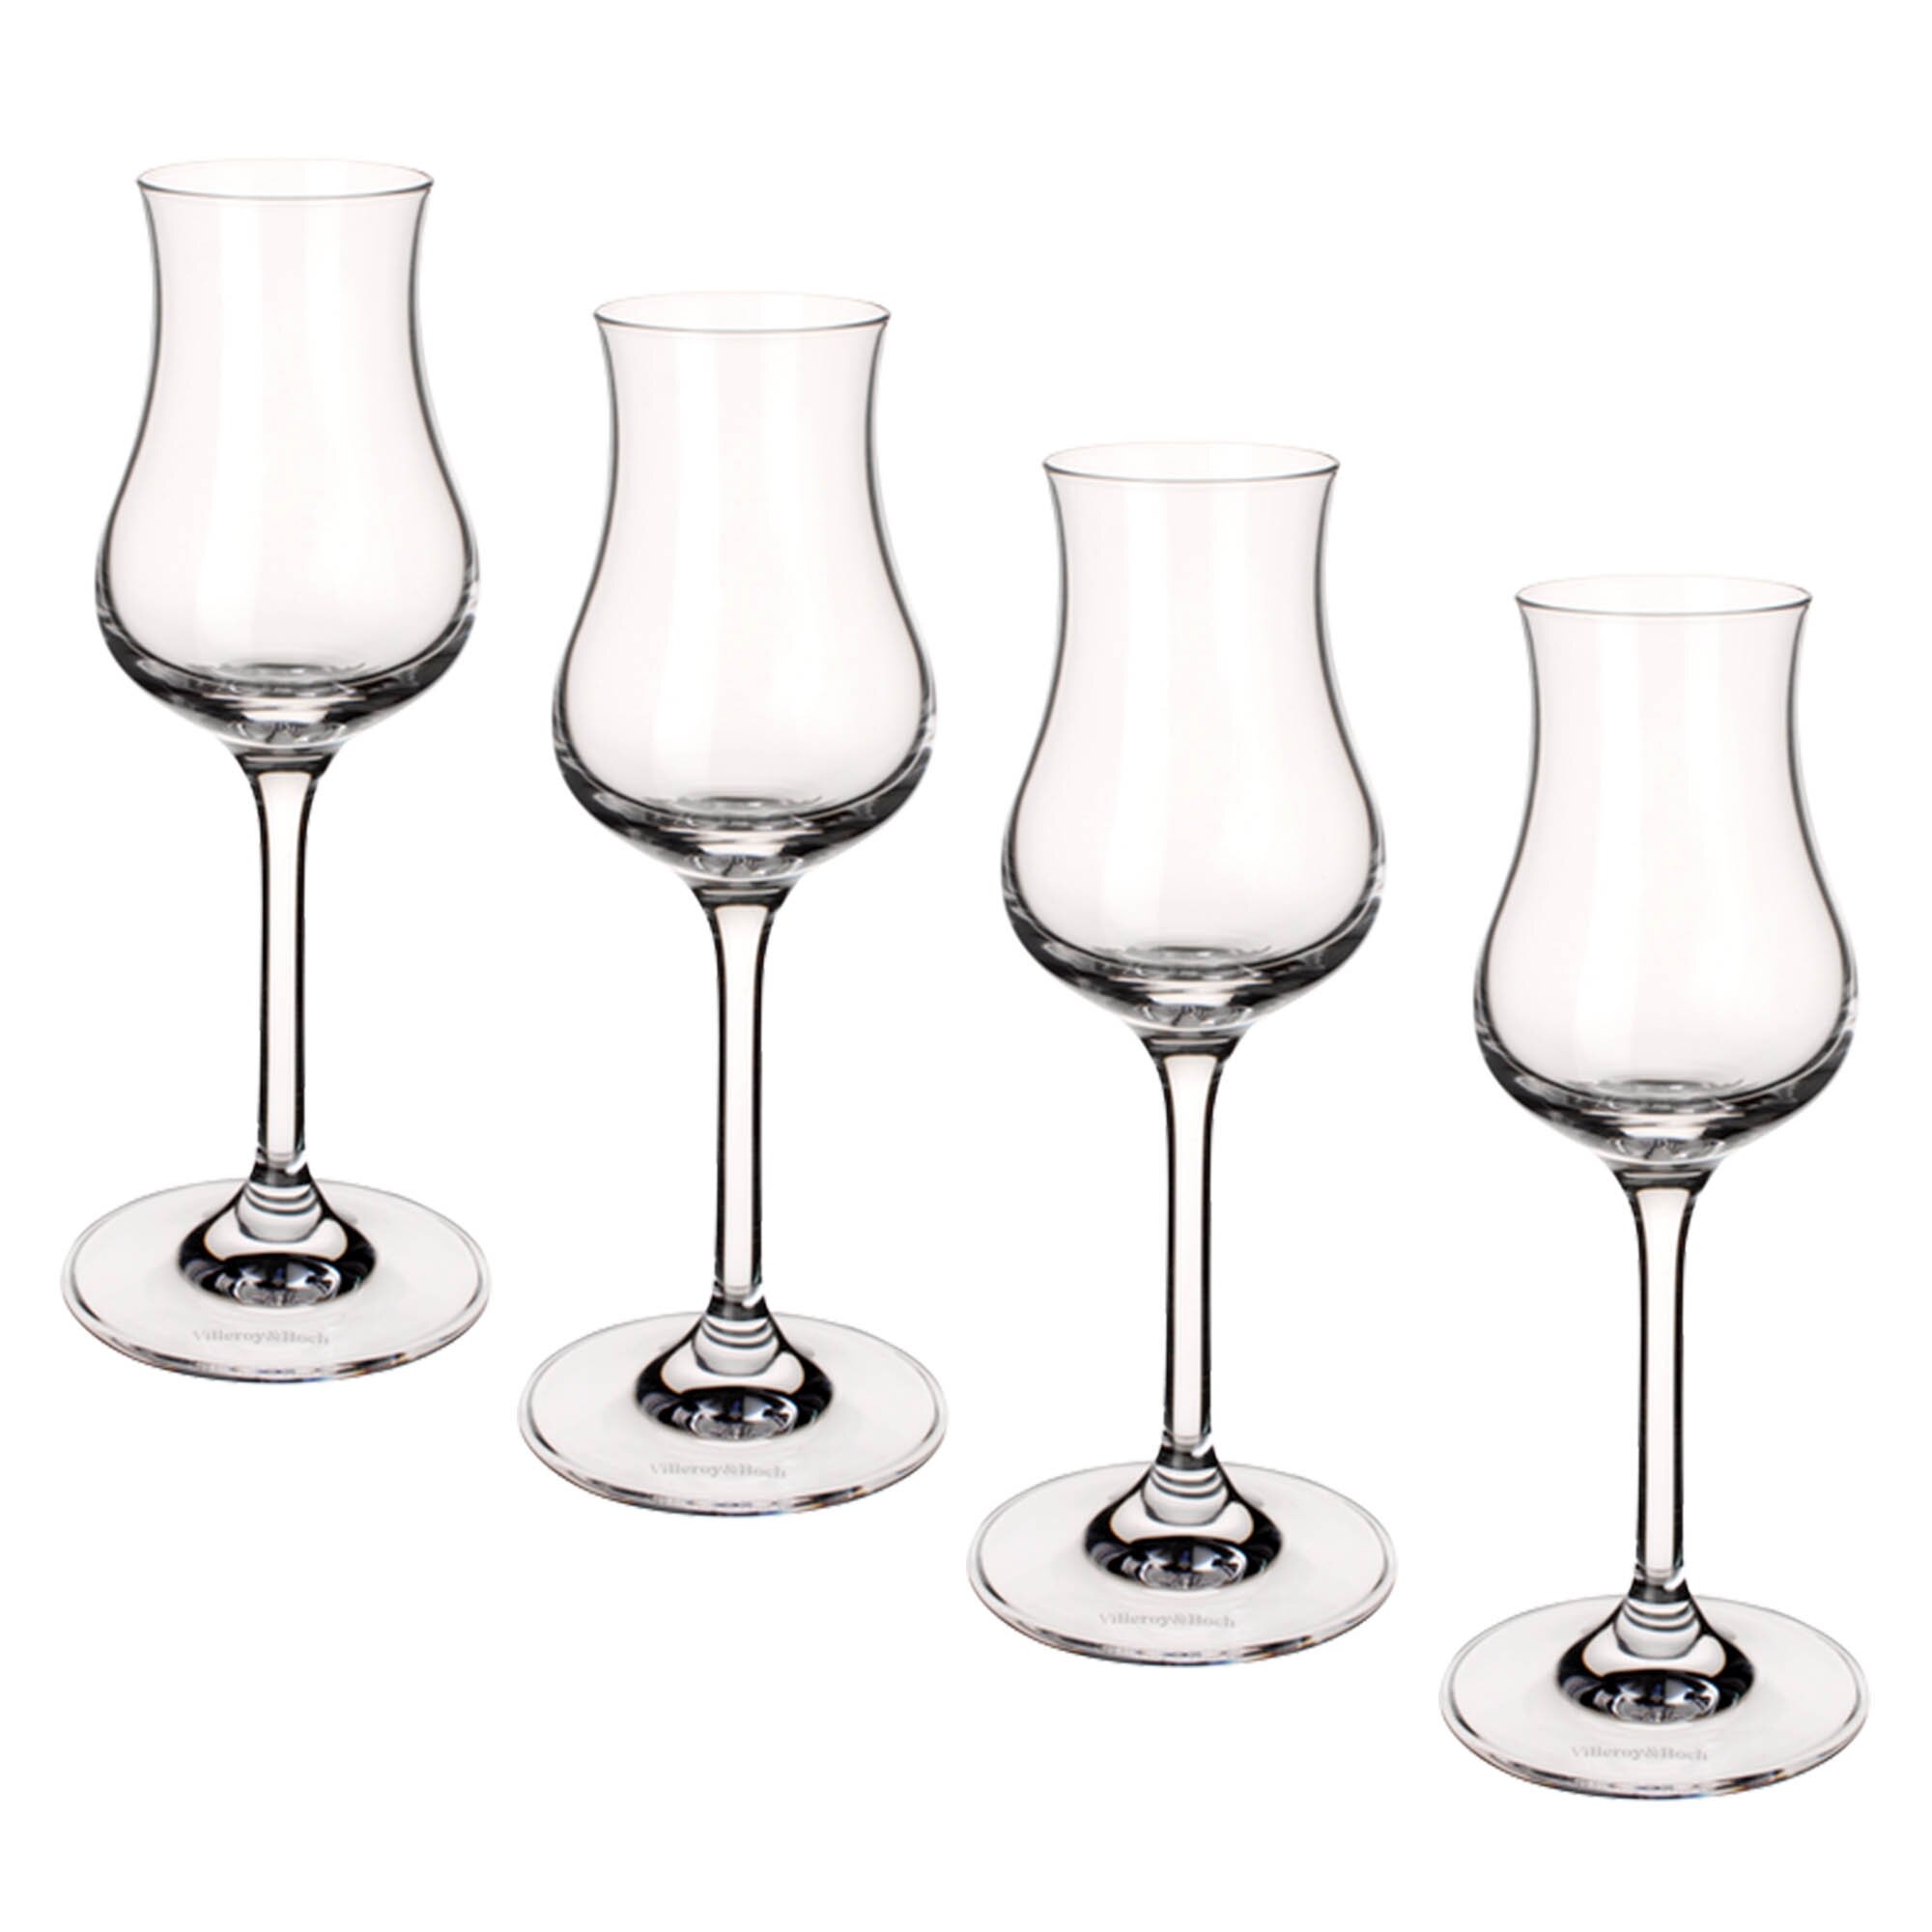 https://assets.wfcdn.com/im/60023402/compr-r85/1150/115025862/entree-sherry-goblet-325-oz-crystal-cordial-glasses-set-of-4.jpg